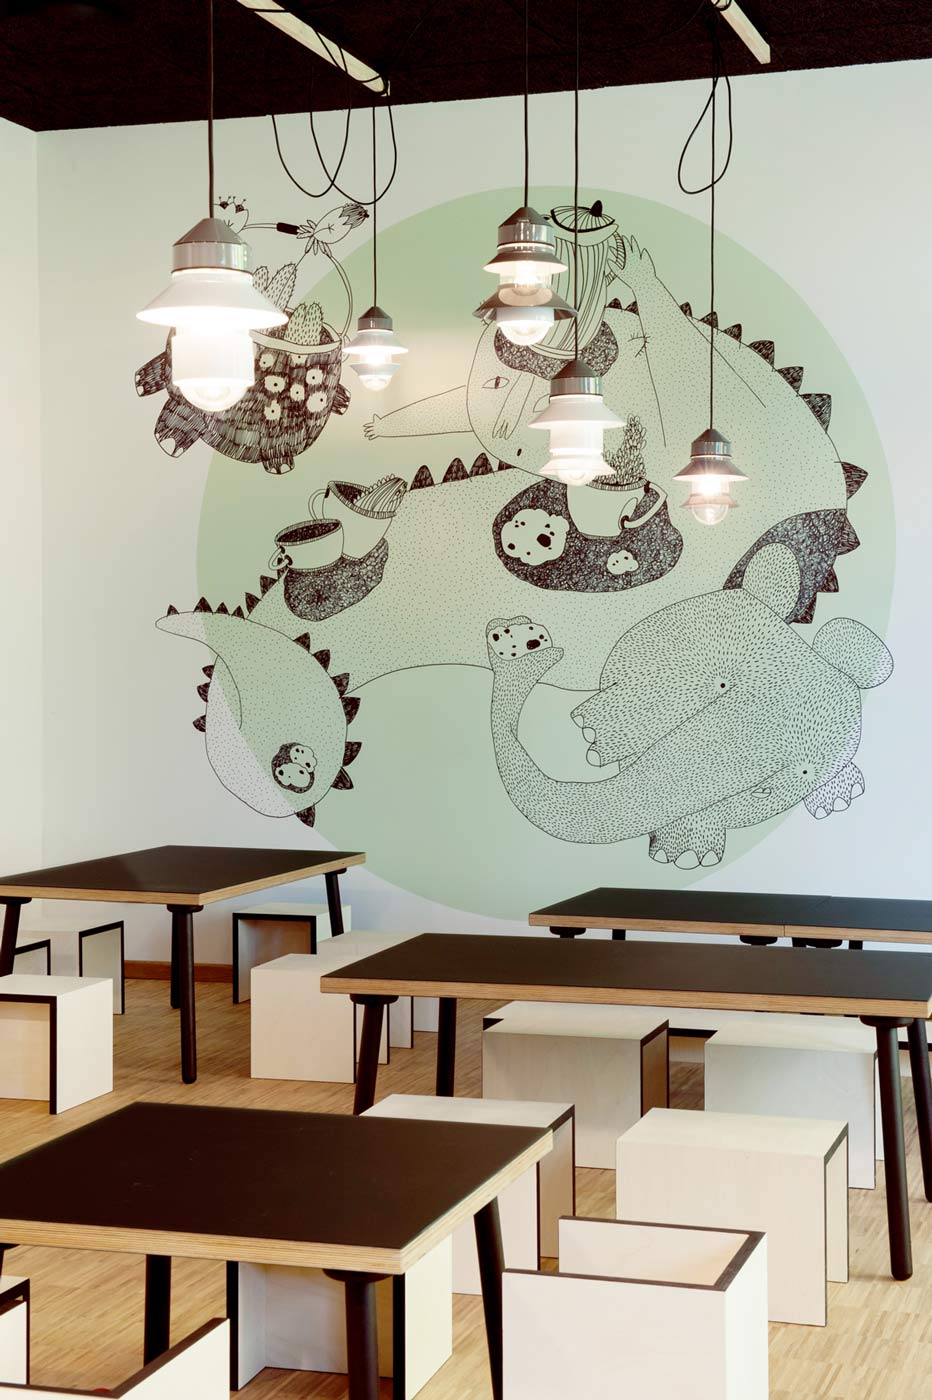 Ausdrucksstarke Pendelleuchten und Wandgrafik im Kindercafé